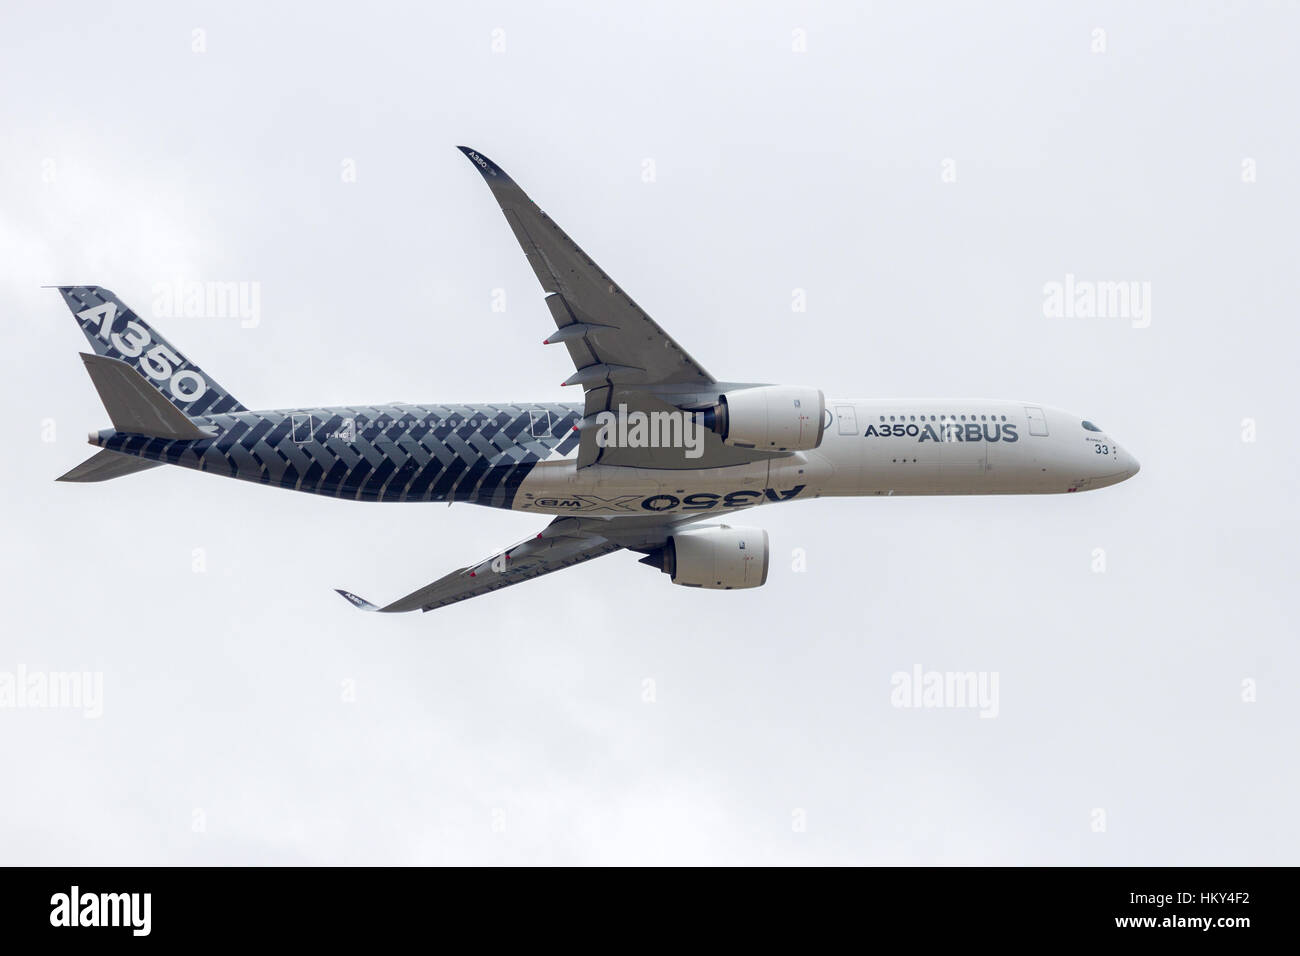 Parigi - giu 18, 2015: Airbus A350 volo bassa.La Airbus A350 è il nuovo long-range aereo jet sviluppato dalla comunità del costruttore di aeromobili Airbus. Foto Stock